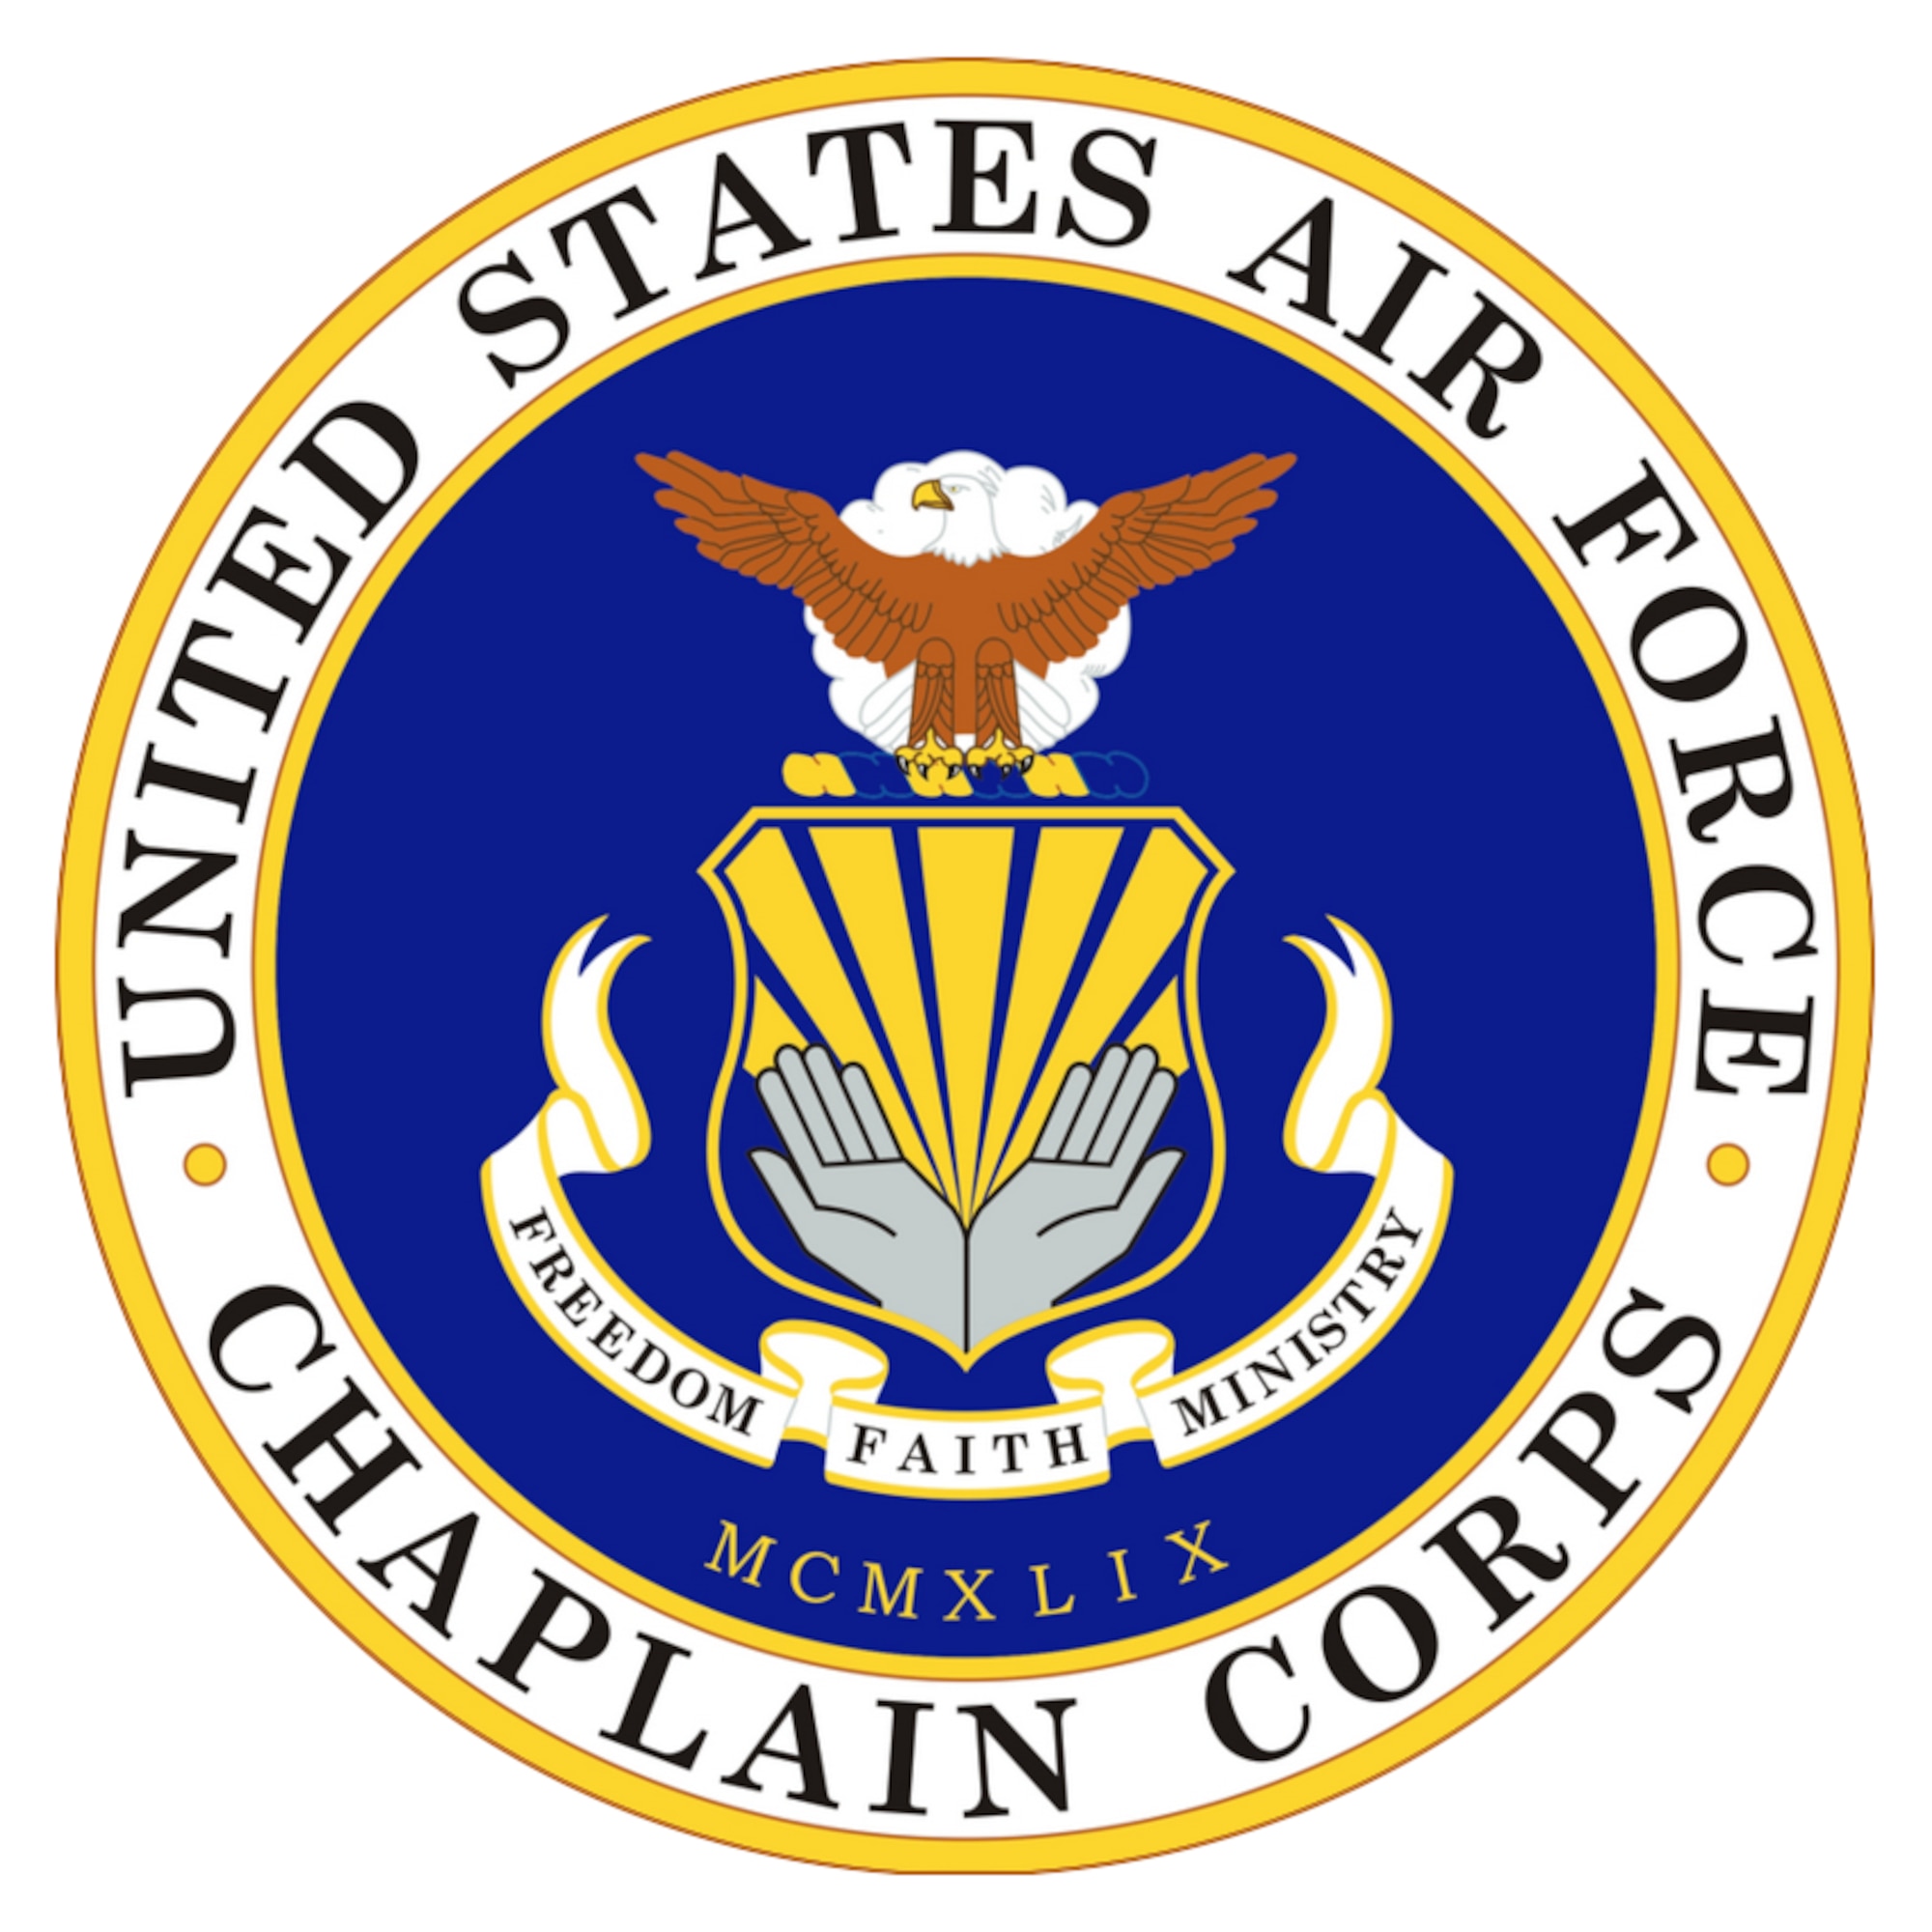 AF Chaplain Corps Emblem